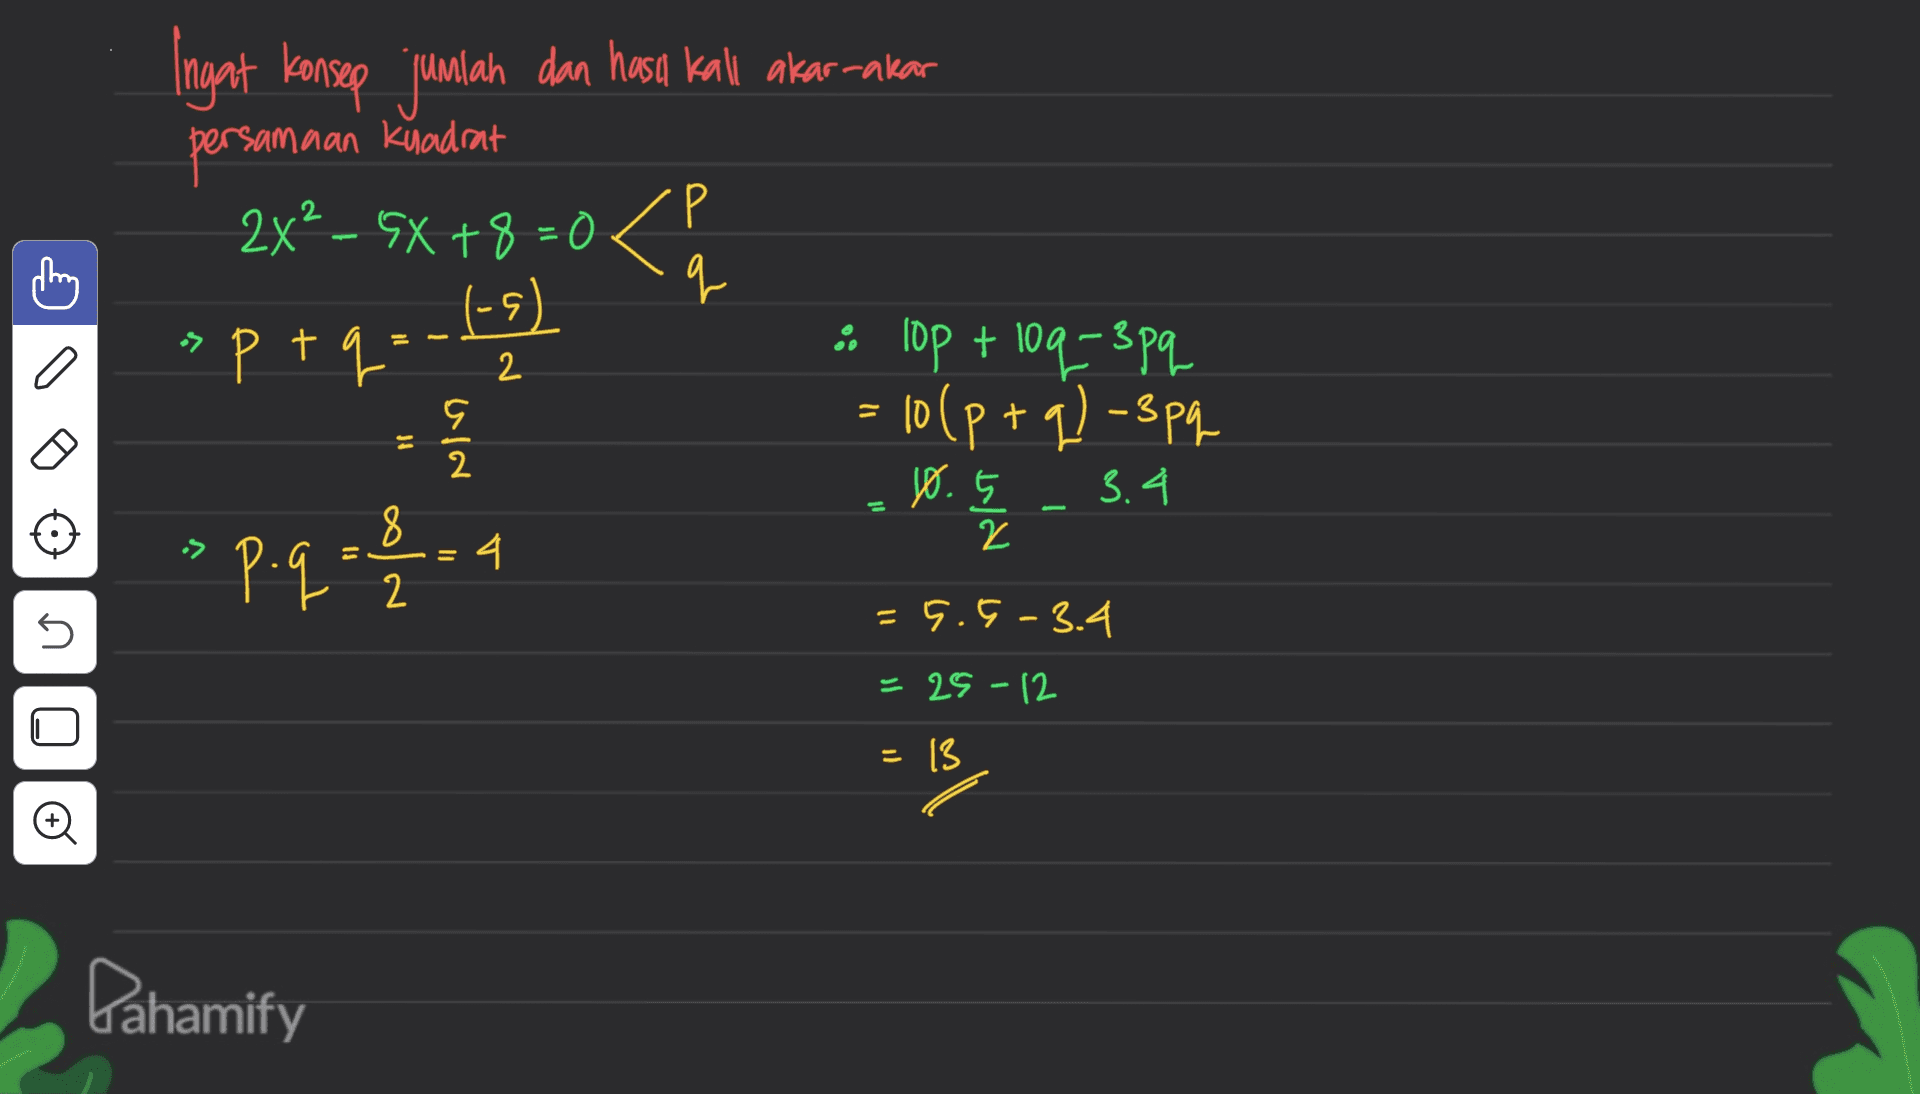 samaan kuadrat Р Ingat konsep jumlah dan hara kali akar-akar persamaan 2x2 - 6x +8 = 0 < q L (-۶) • lop + 109=3pq - 10(p+q)-3pq >p.9-1.4 a » ptq. 1-2 = 10 9 2 0.5 3.4 = s = 5.9 -3.4 25-12 = 13 Đ Dahamify 